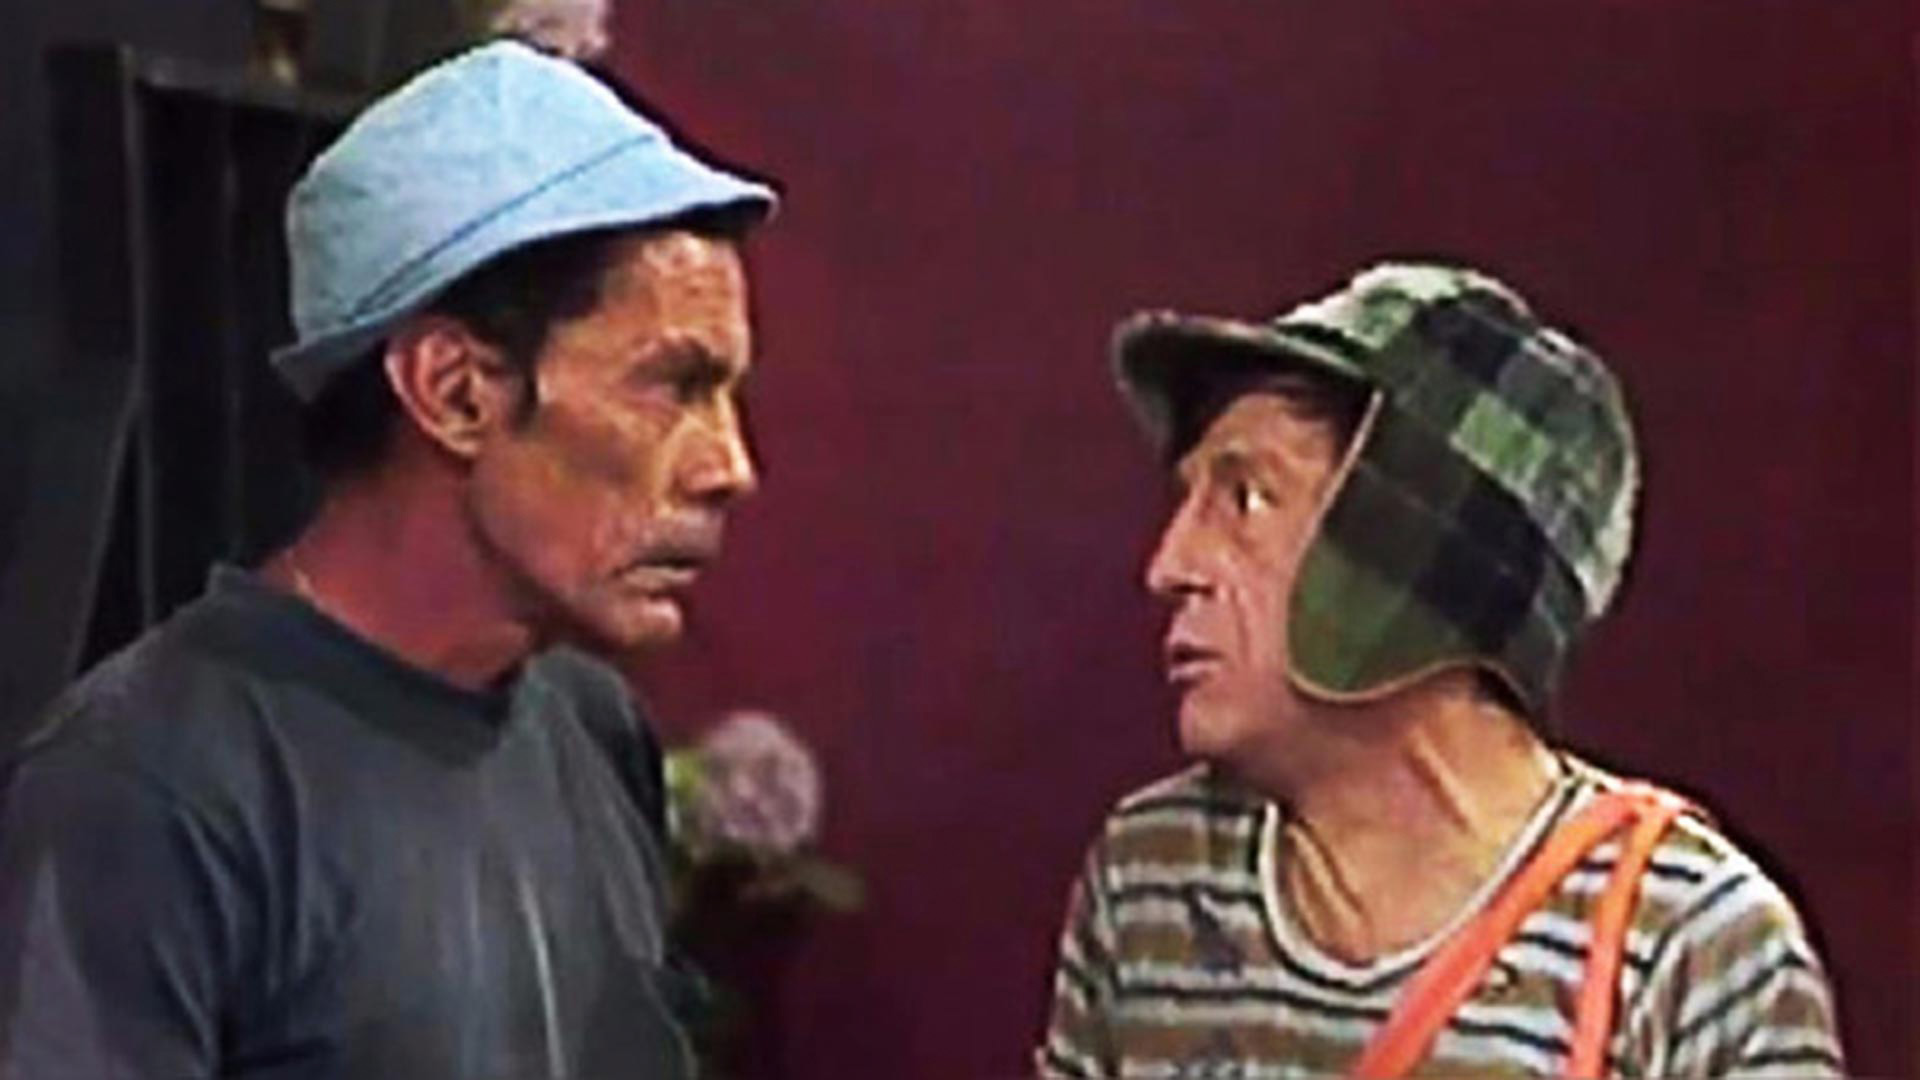 El Chavo del 8 es una de las series más icónicas del humor mexicano Captura de pantalla:
Distrito Comedia